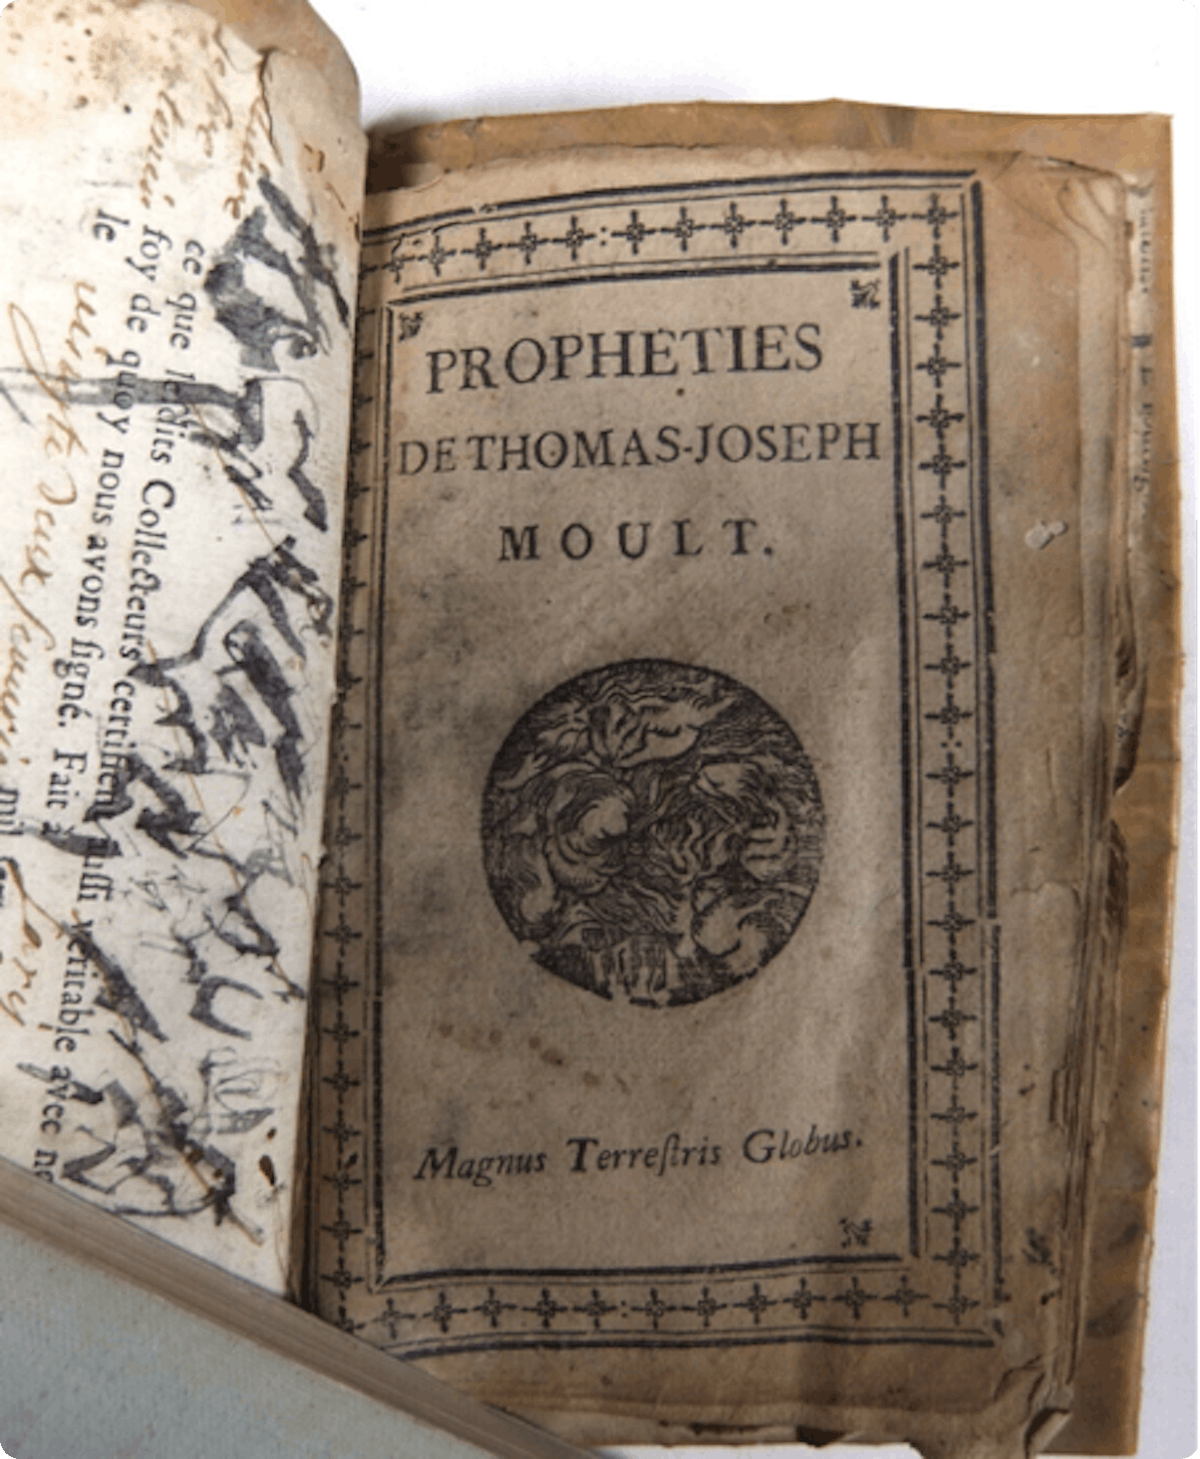 The Prophecies of Thomas-Joseph Moult.